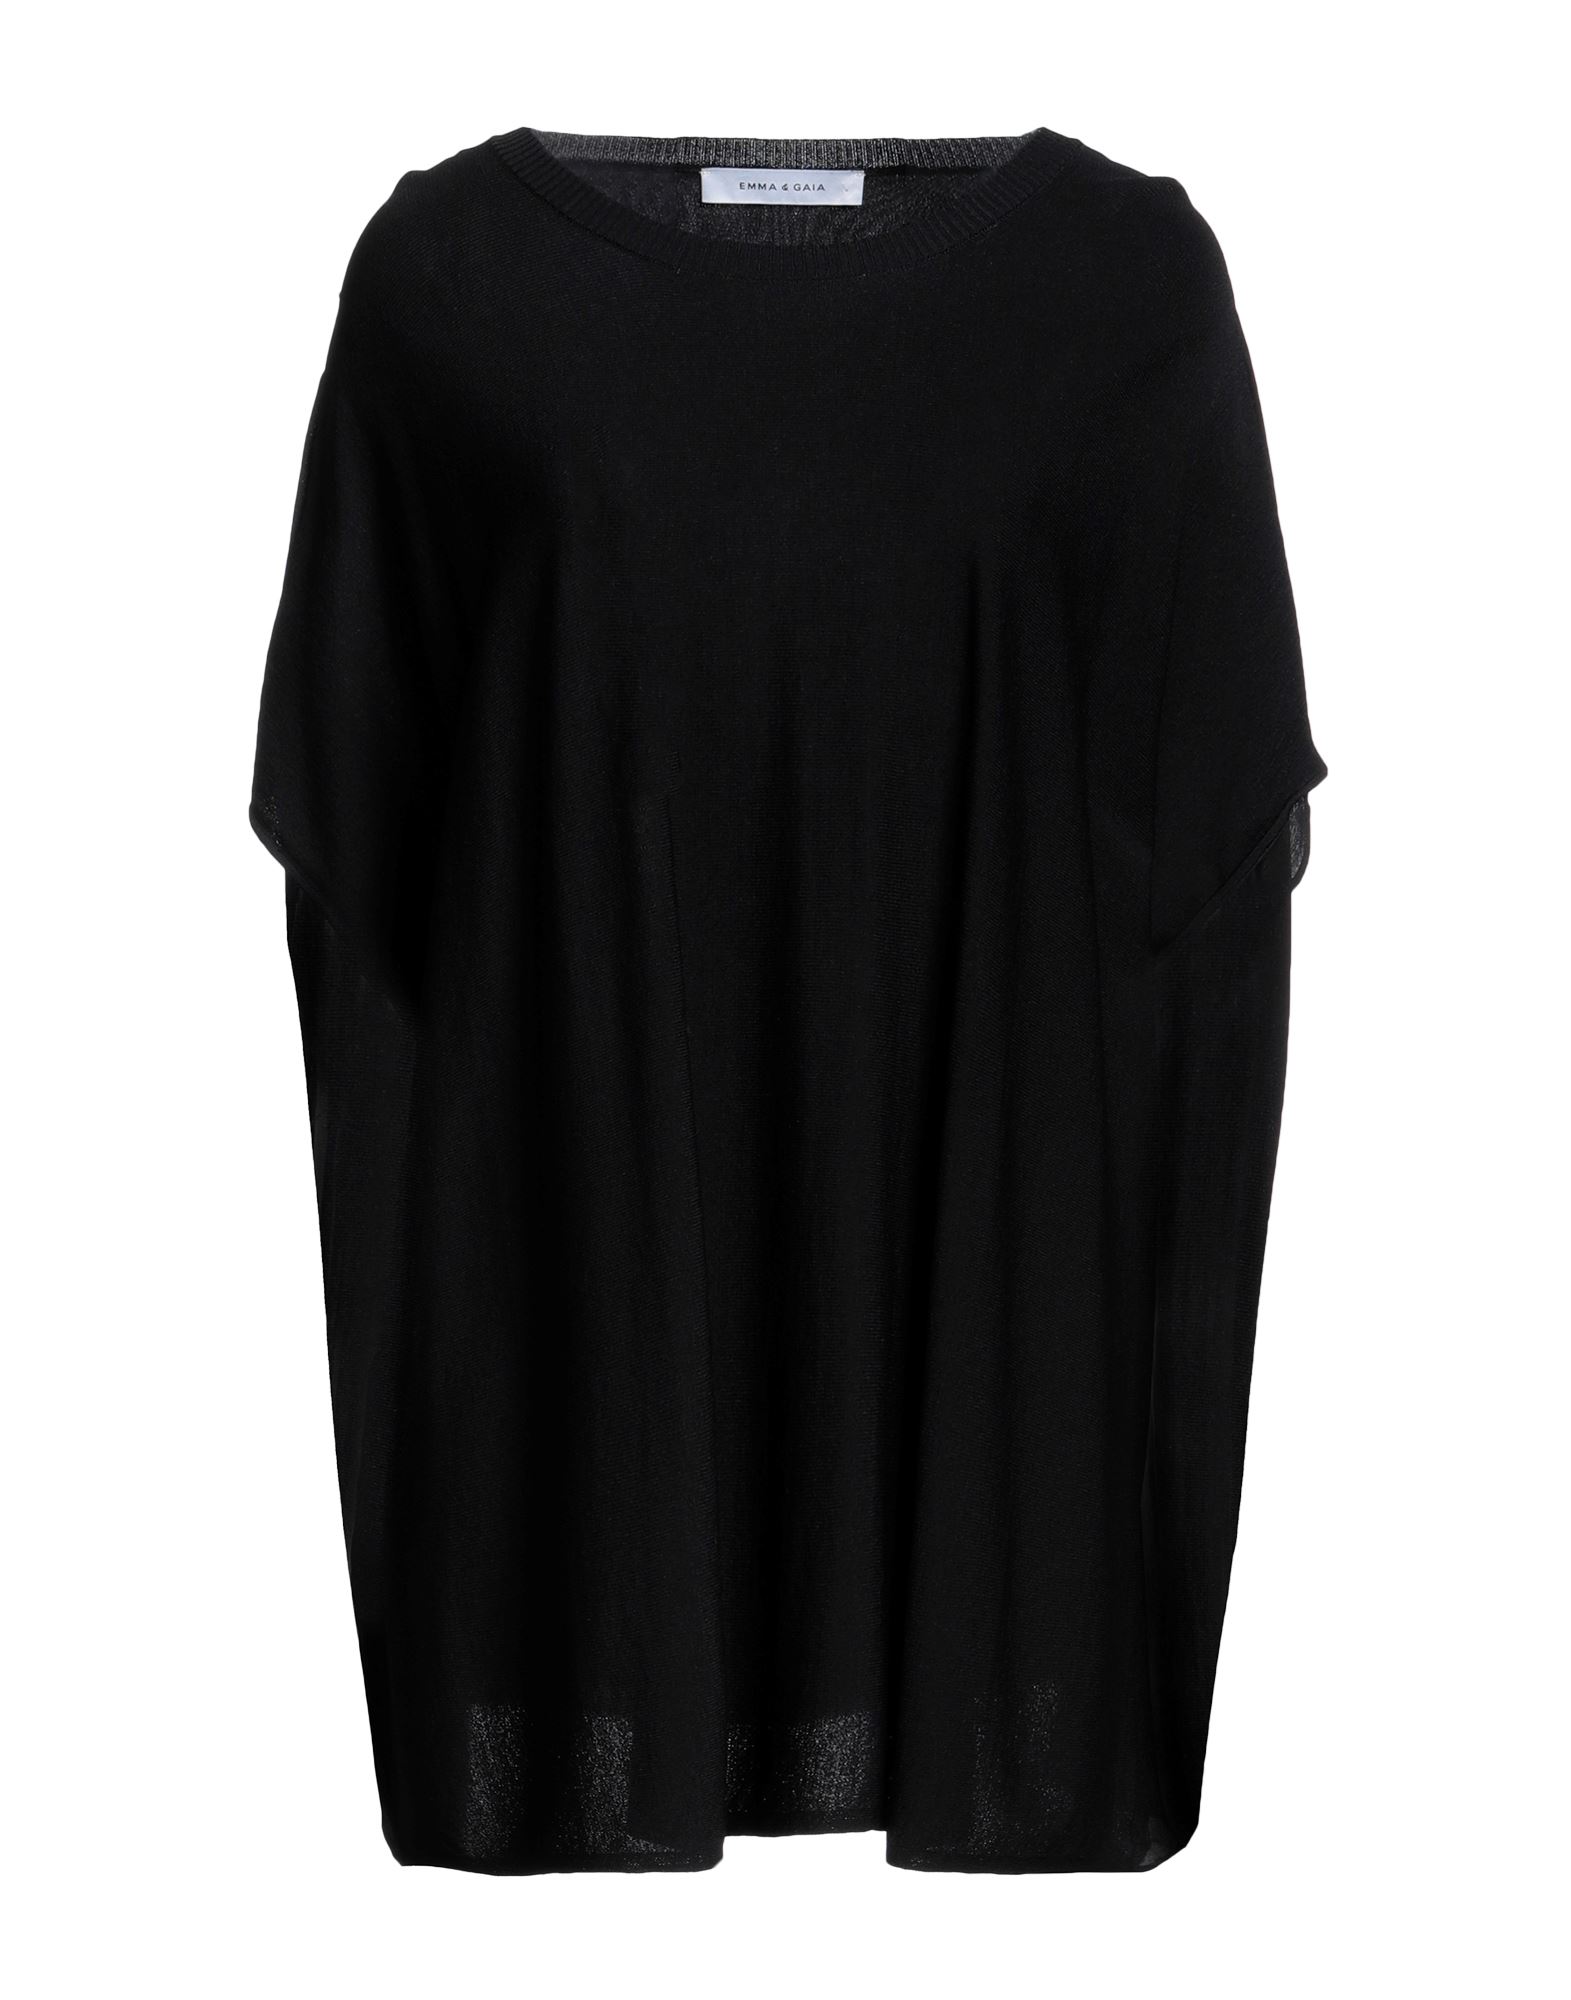 Emma & Gaia Woman Sweater Black Size 8 Viscose, Polyamide